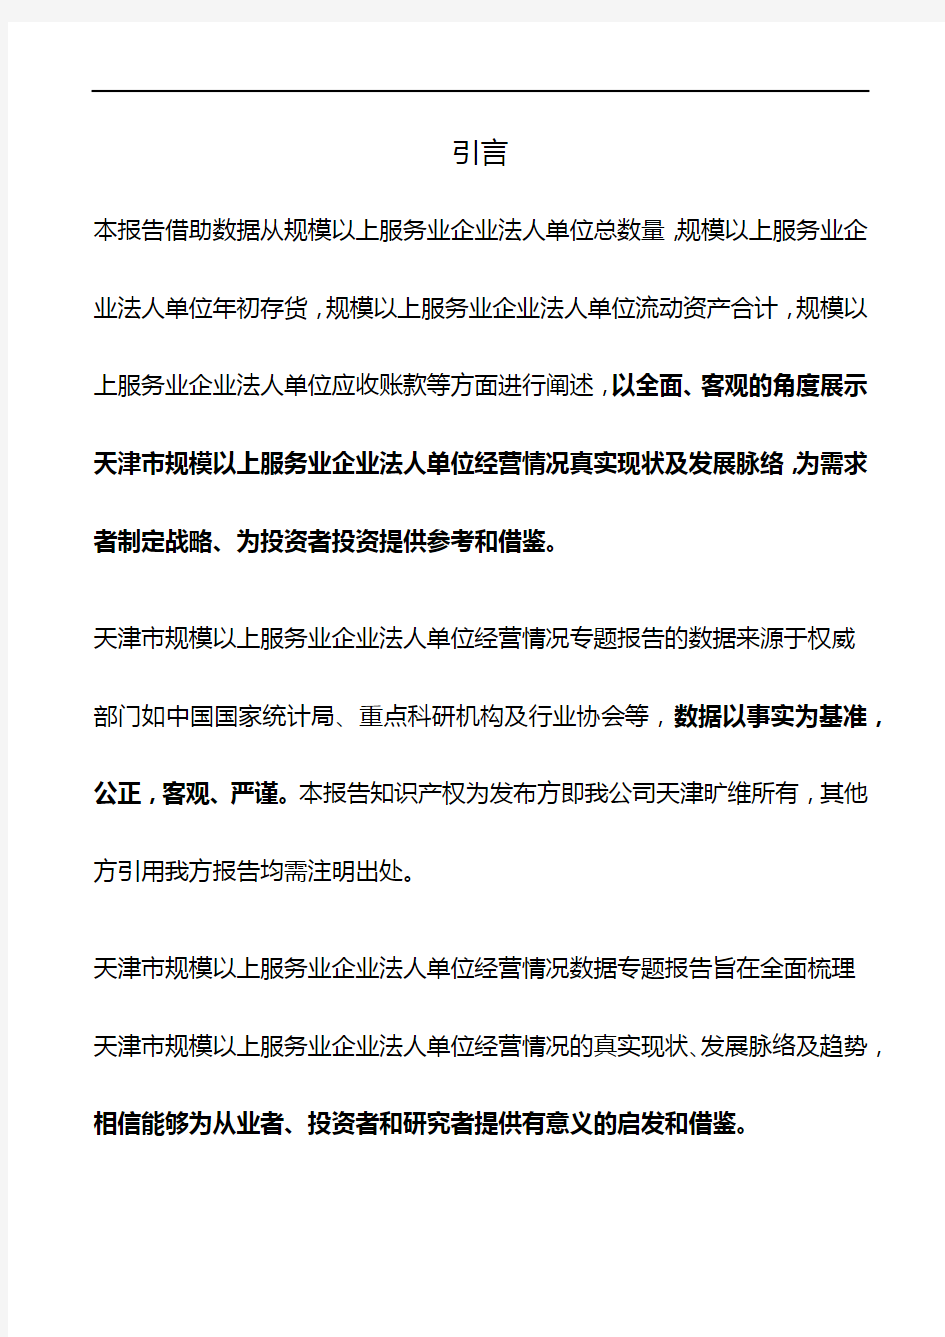 天津市规模以上服务业企业法人单位经营情况3年数据专题报告2019版